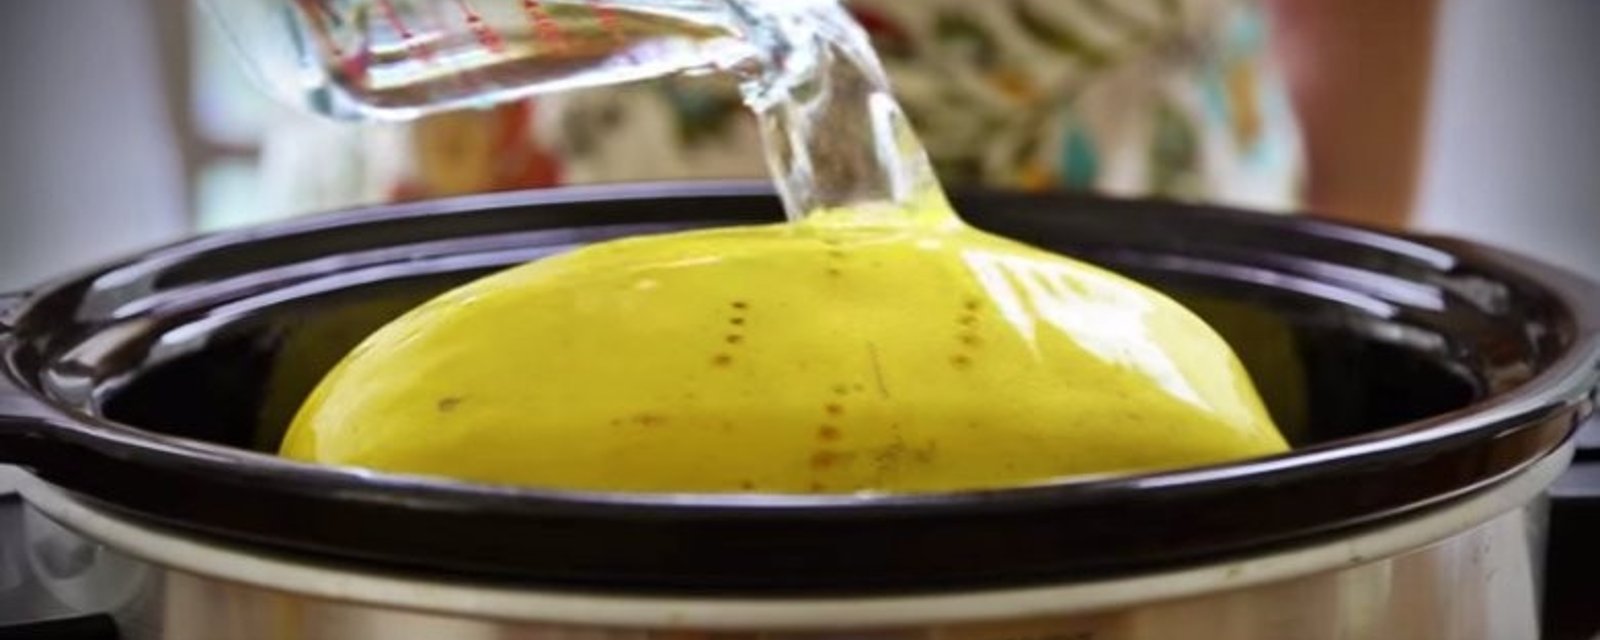 Voici la meilleure façon de cuisiner votre courge spaghetti cet automne!